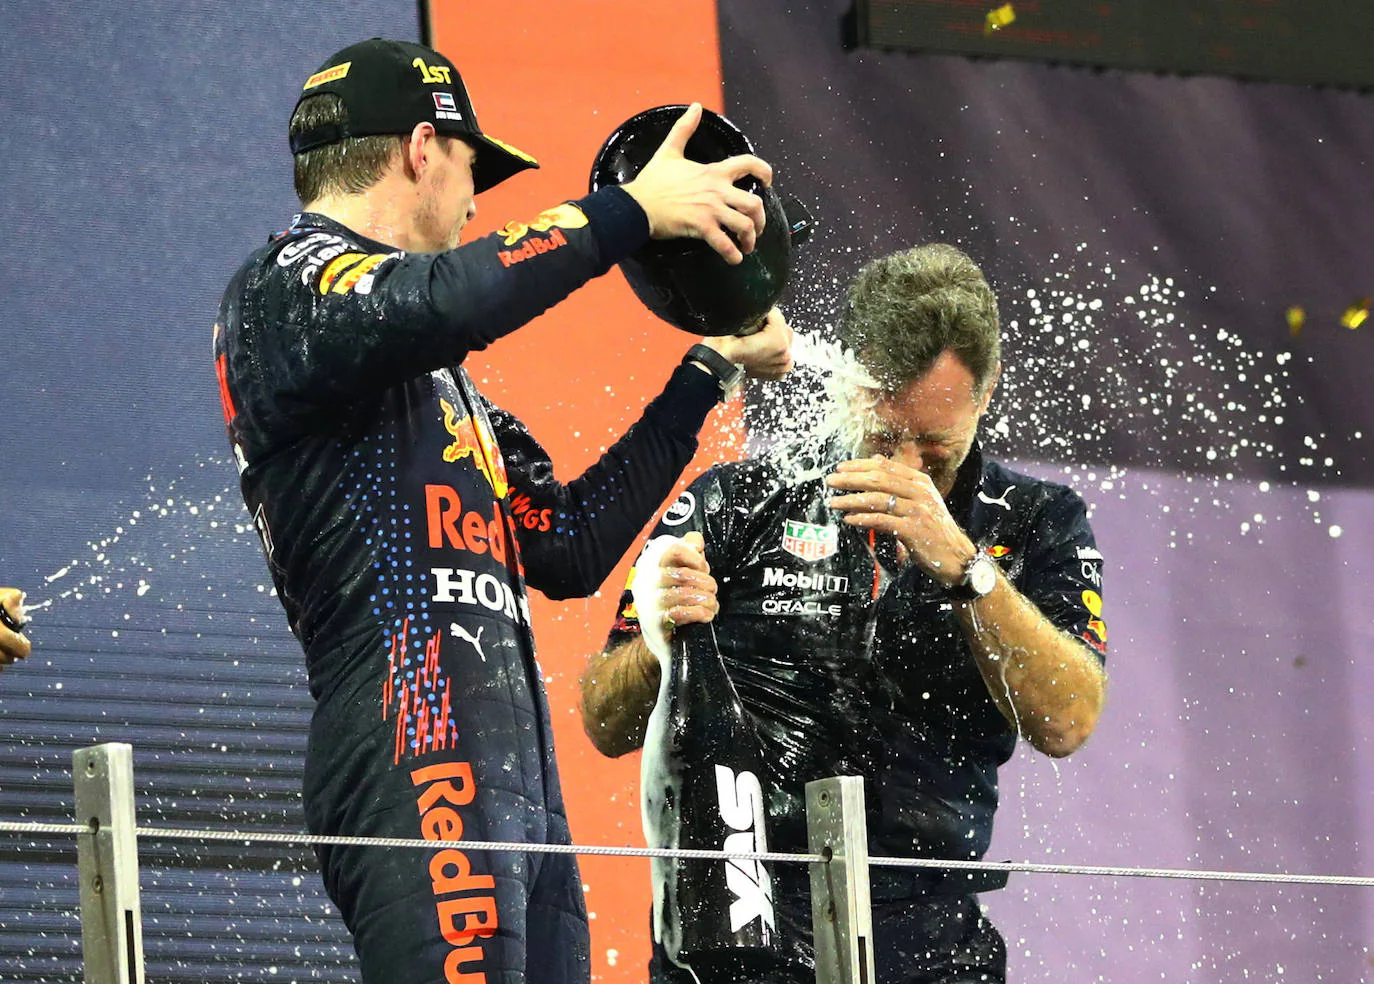 Fotos: La celebración del título de Verstappen, en imágenes